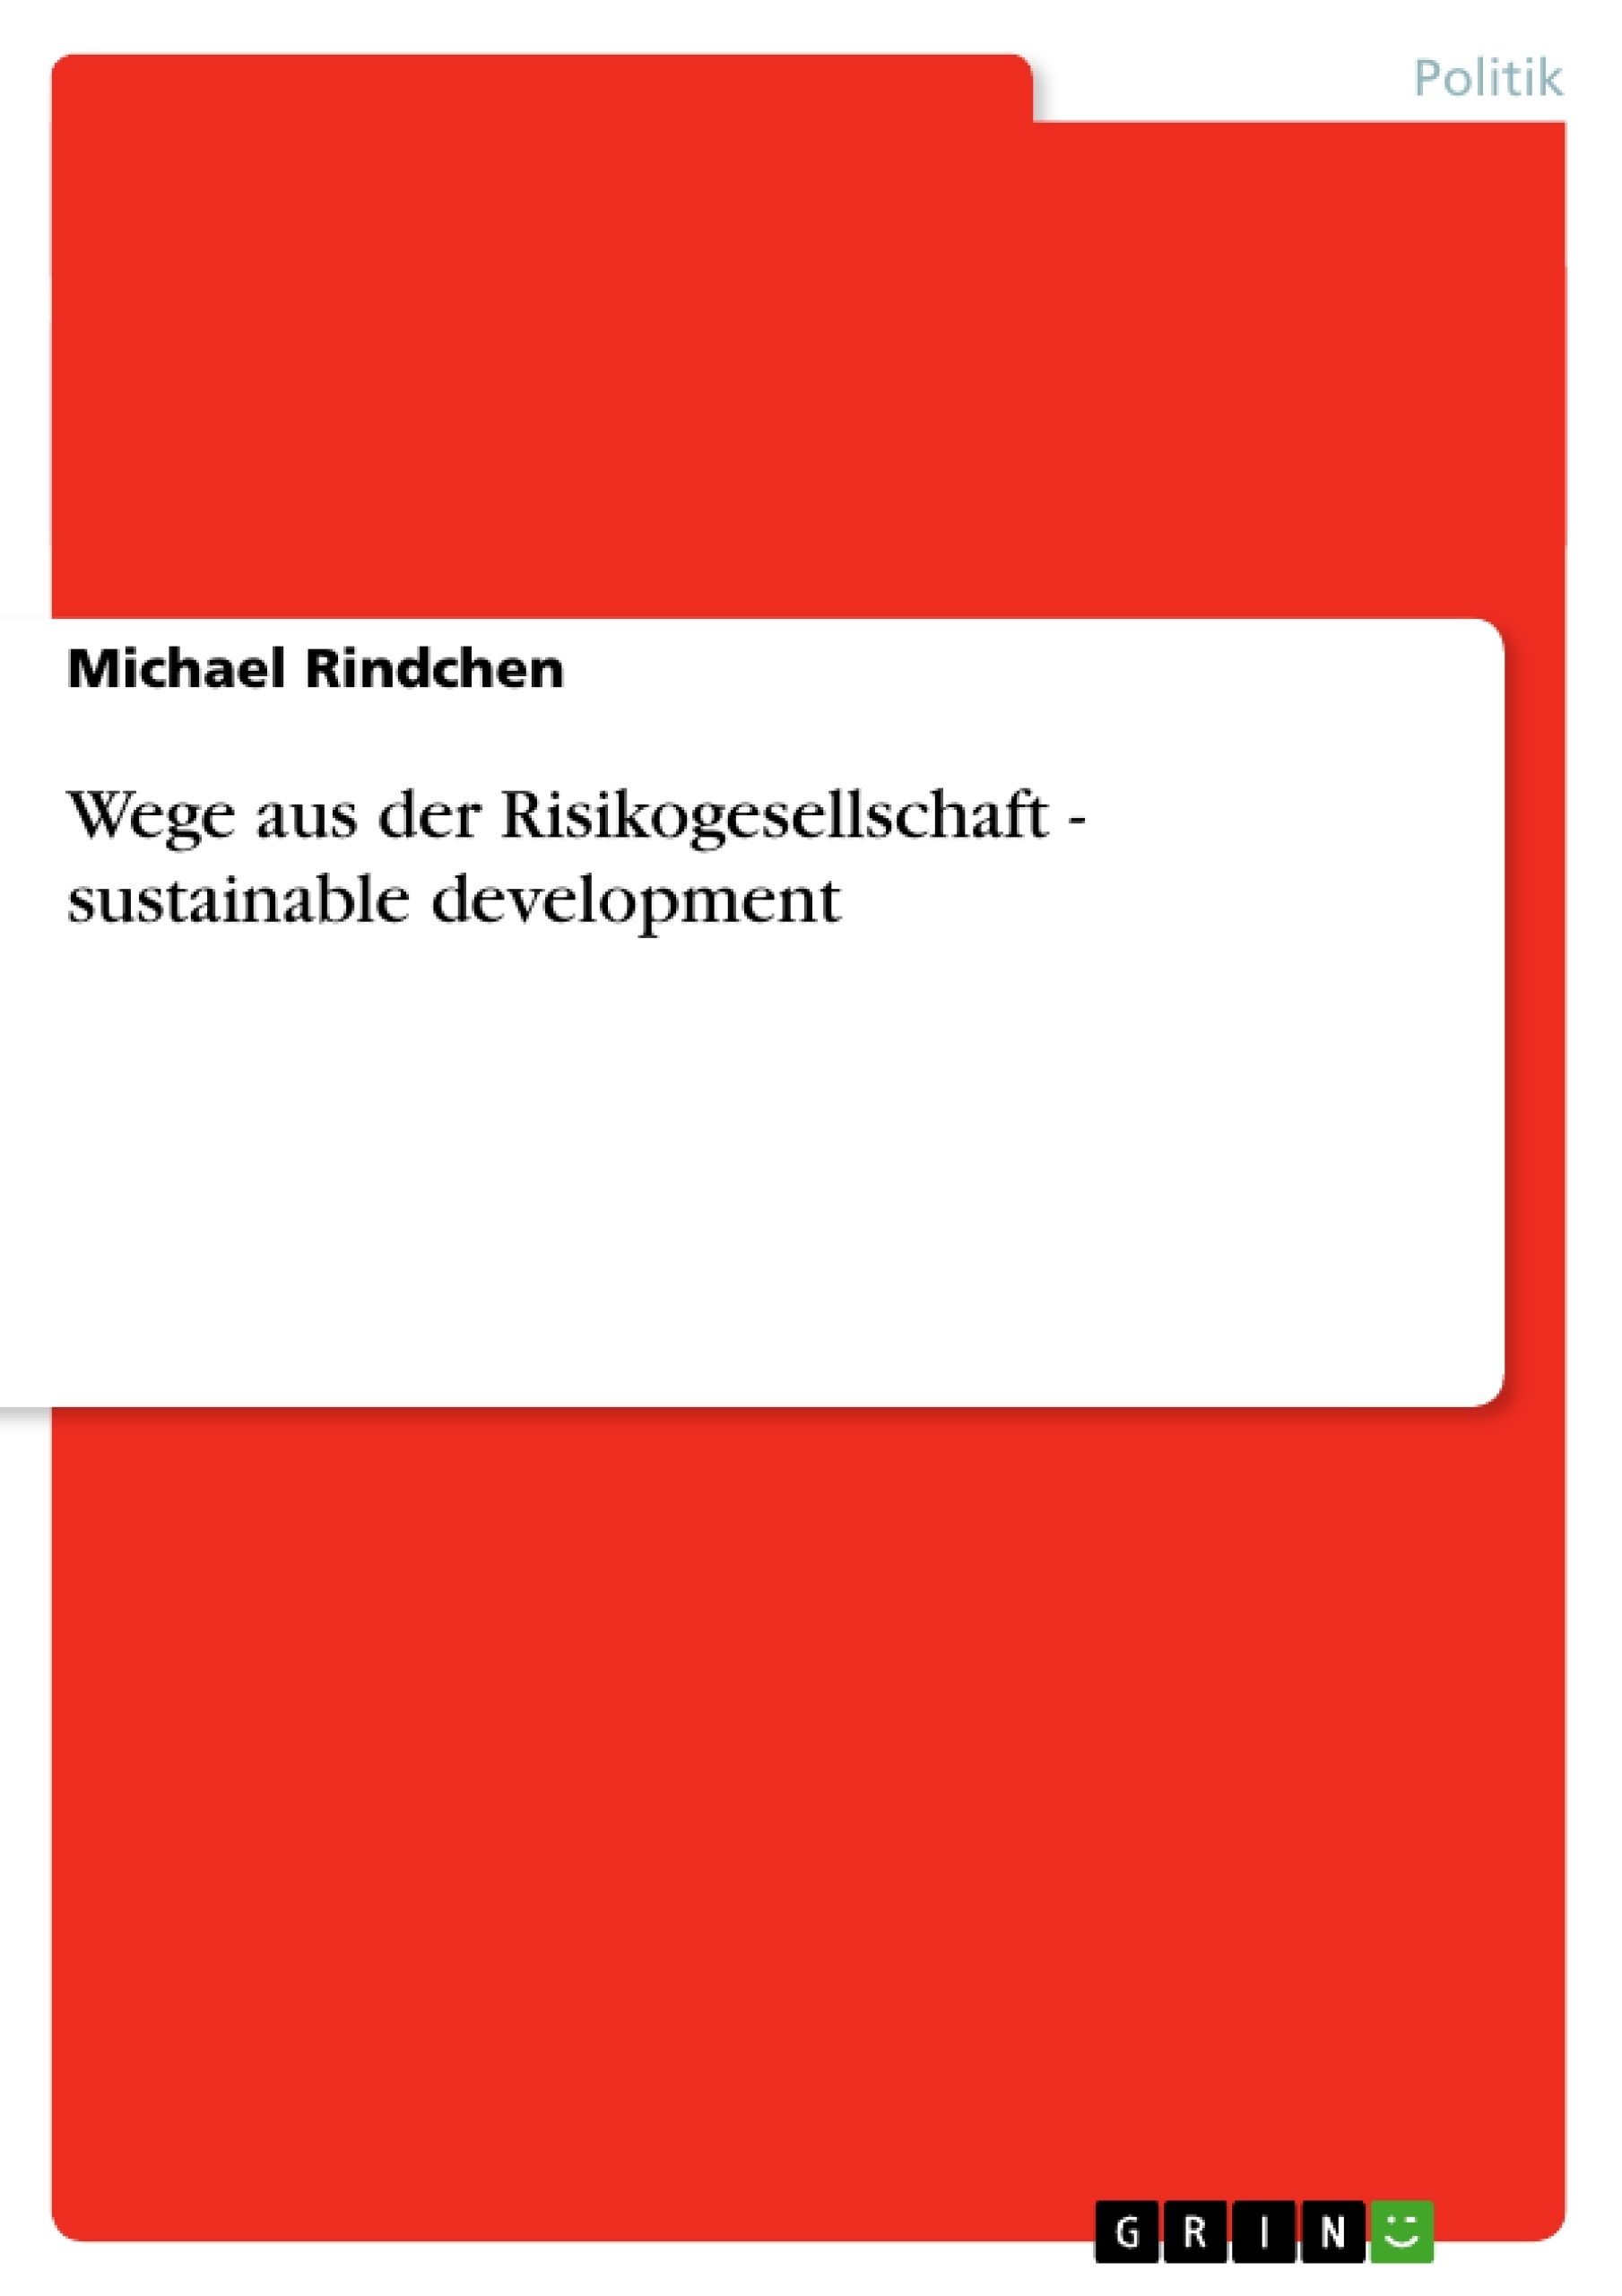 Title: Wege aus der Risikogesellschaft - sustainable development